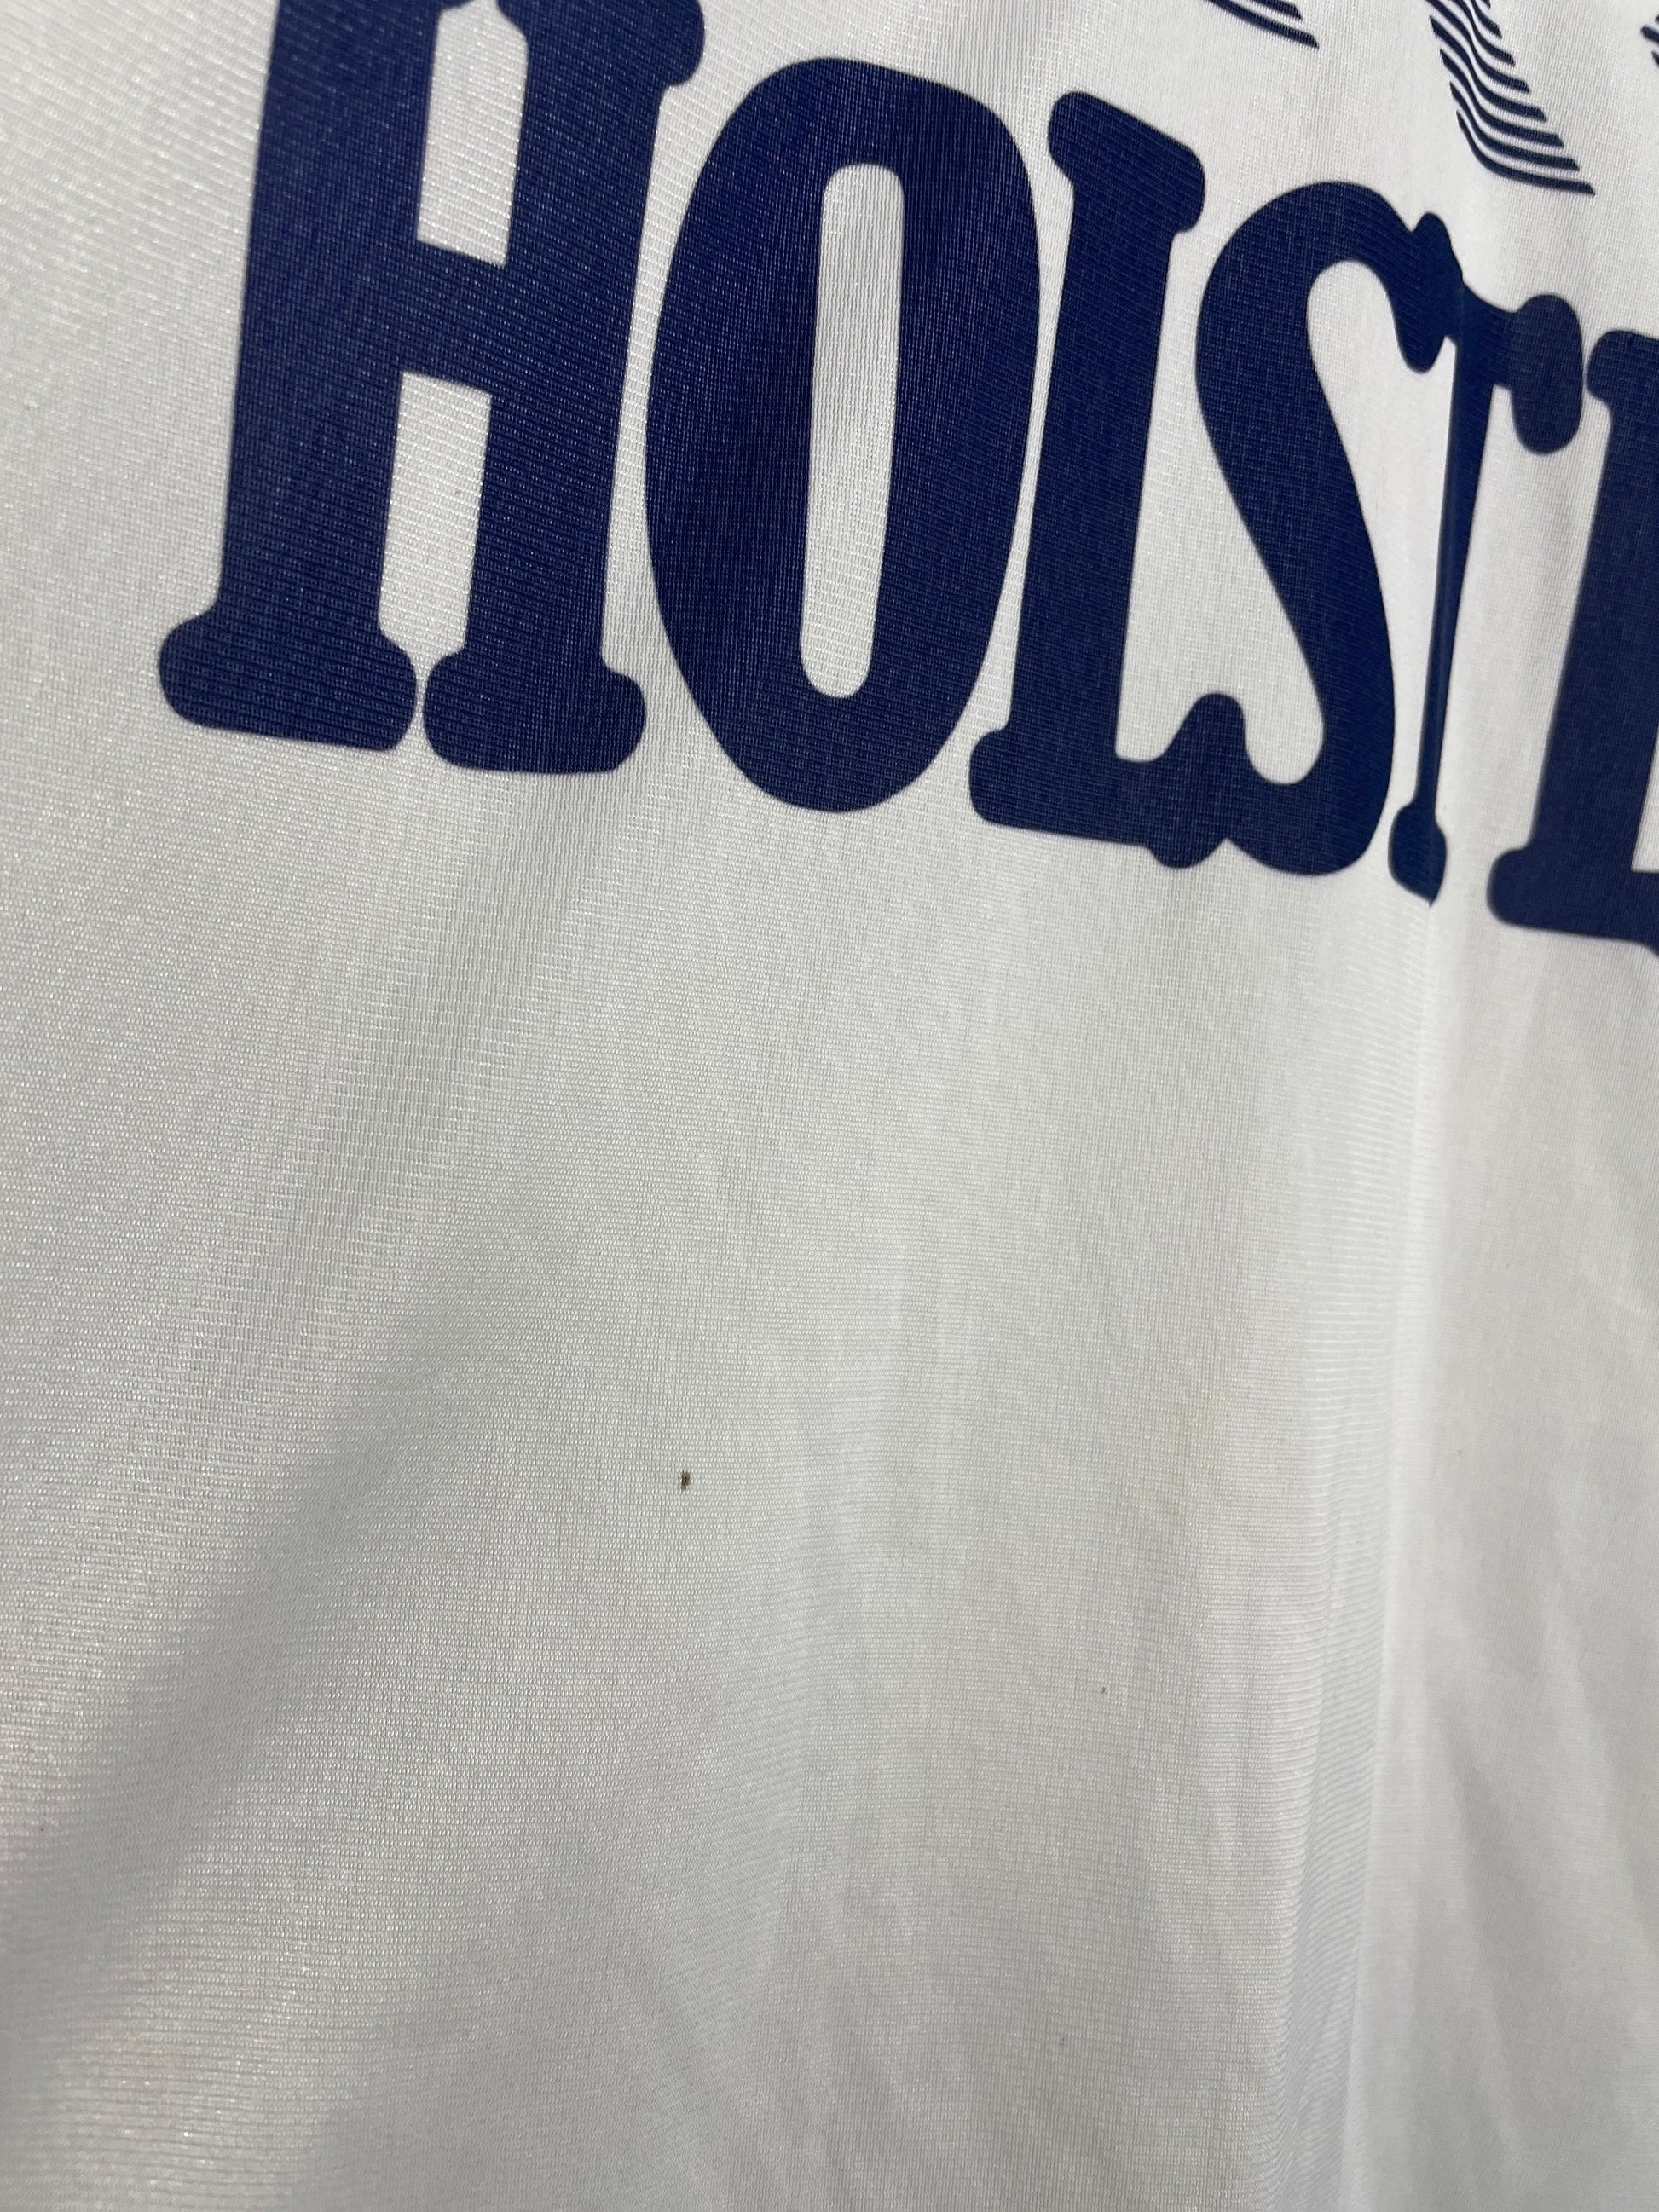 Tottenham Hotspur Home Football Shirt Jersey 1986 1987 Hummel Size